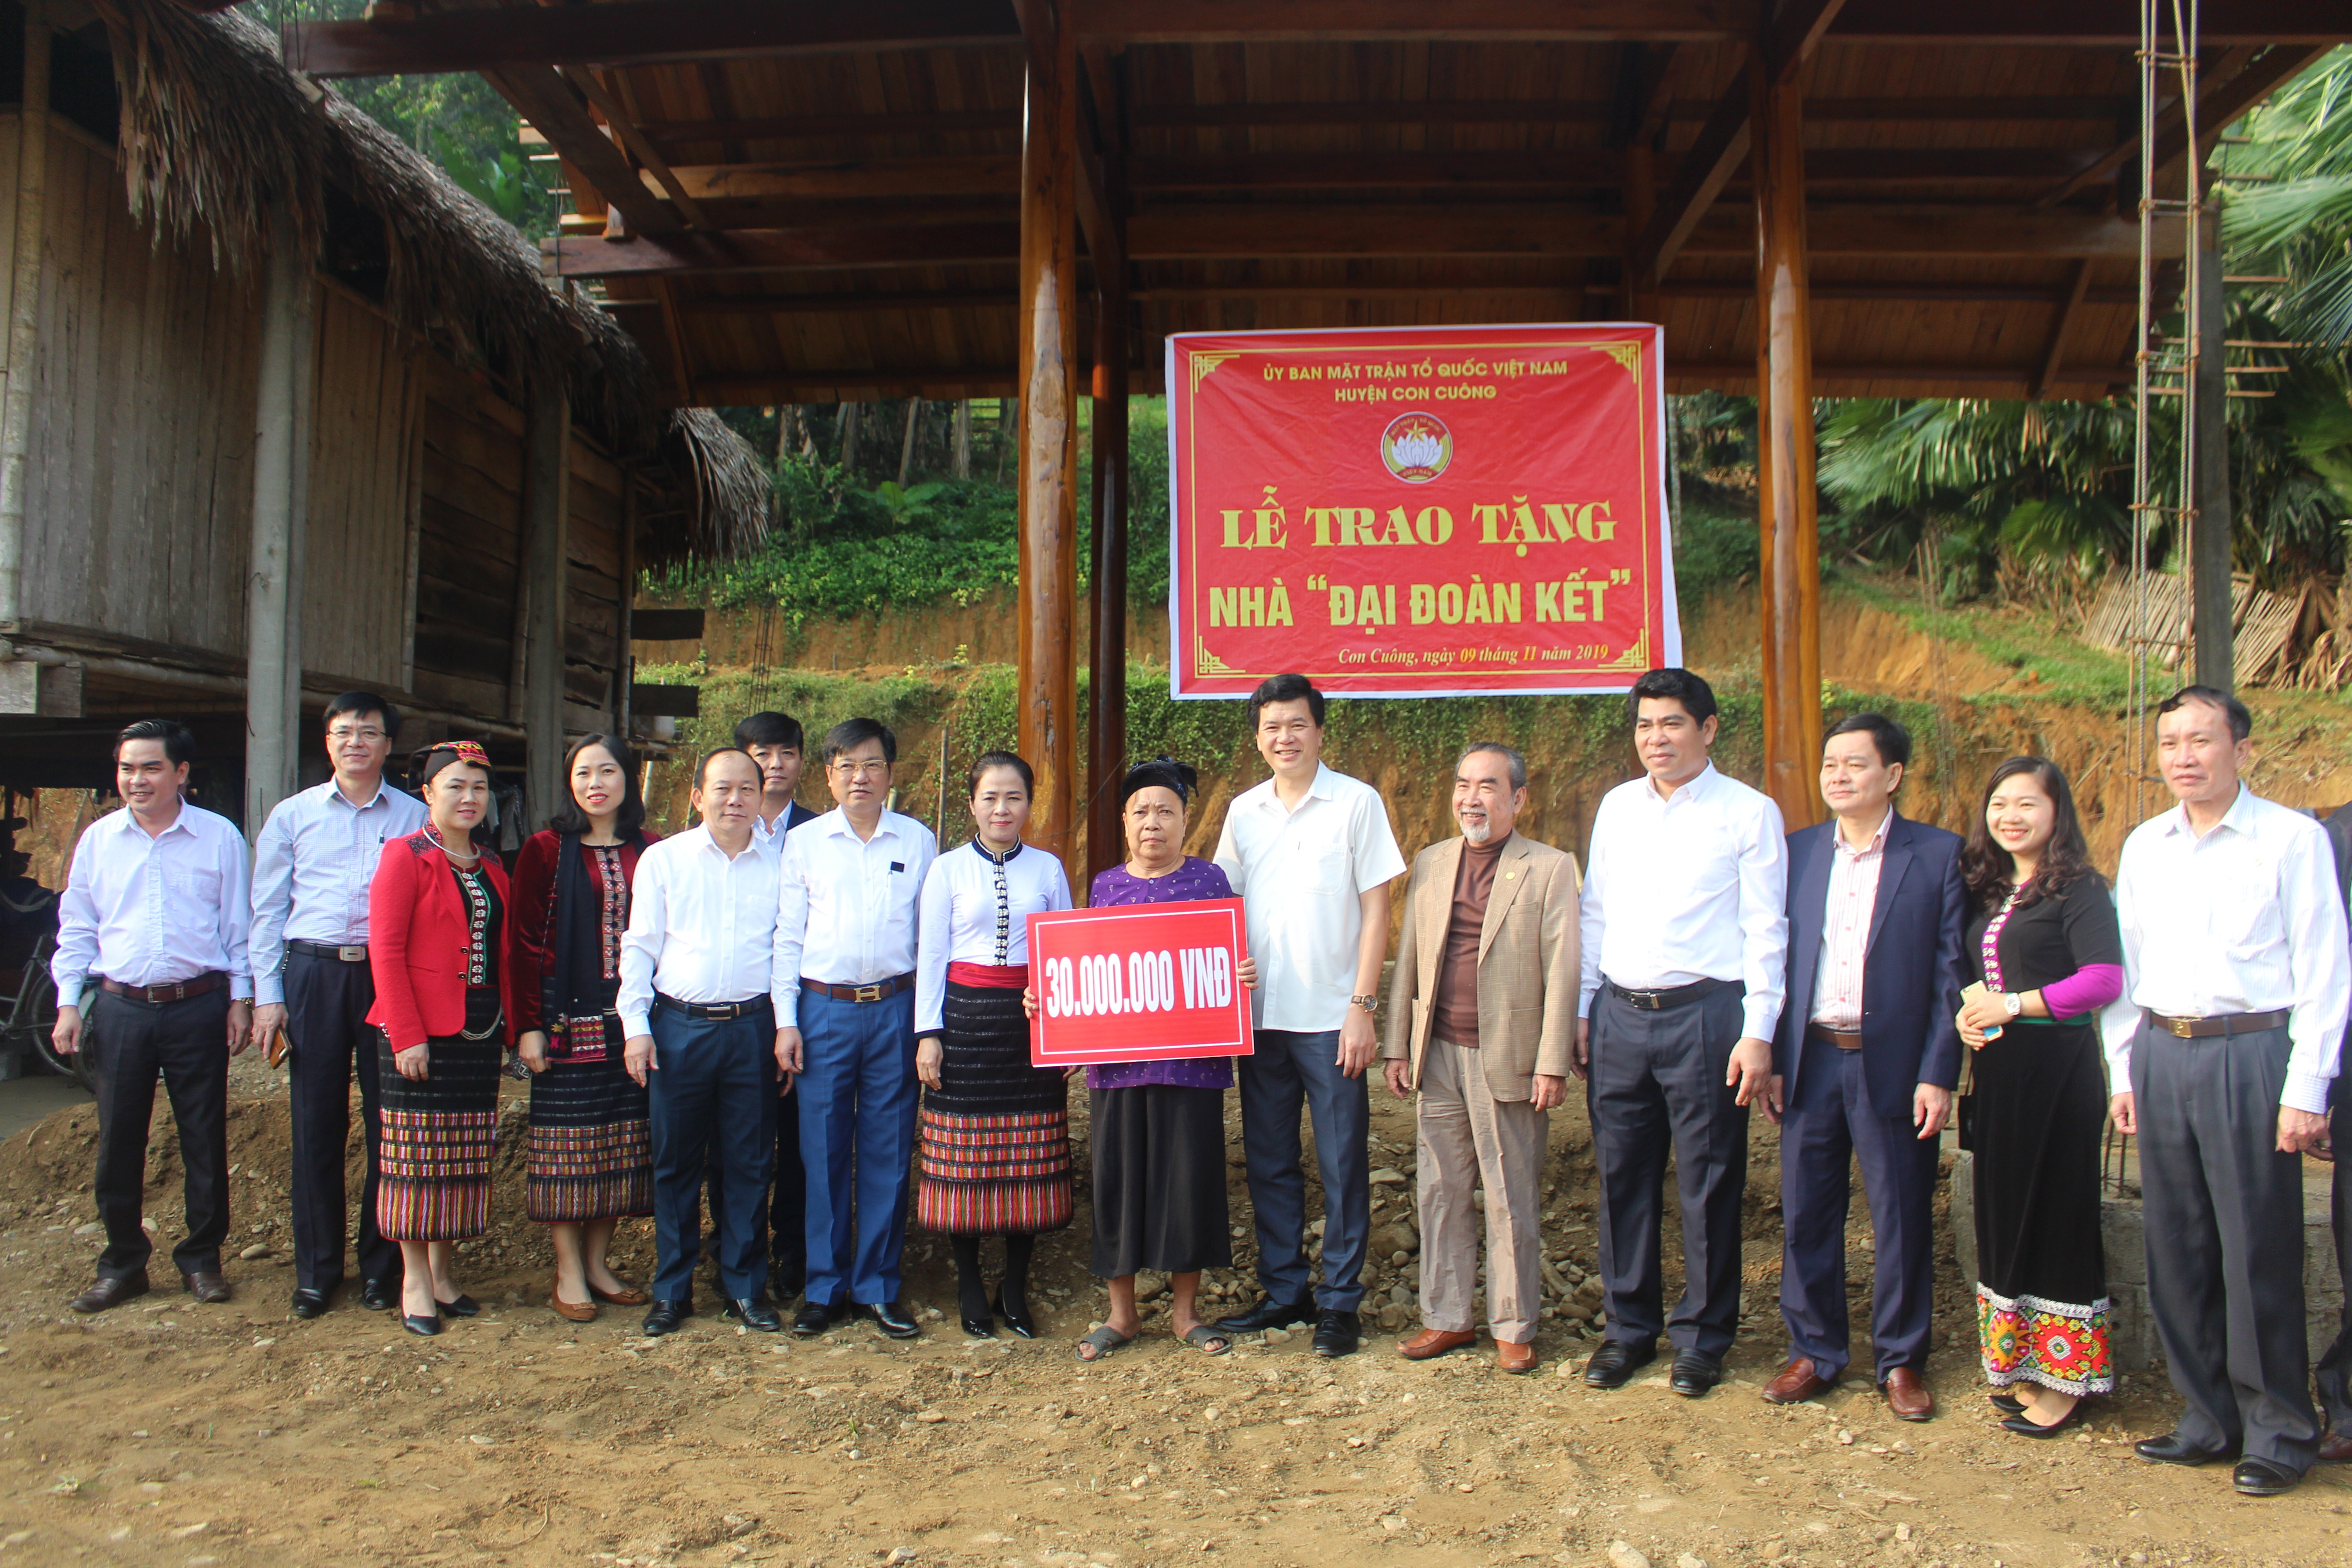 Huyện Con Cuông trao nhà Đại đoàn kết cho gia đình bà Bà Lữ Thị Ban ở bản Liên Sơn, xã Lục Dạ. Ảnh: Bảo Hân